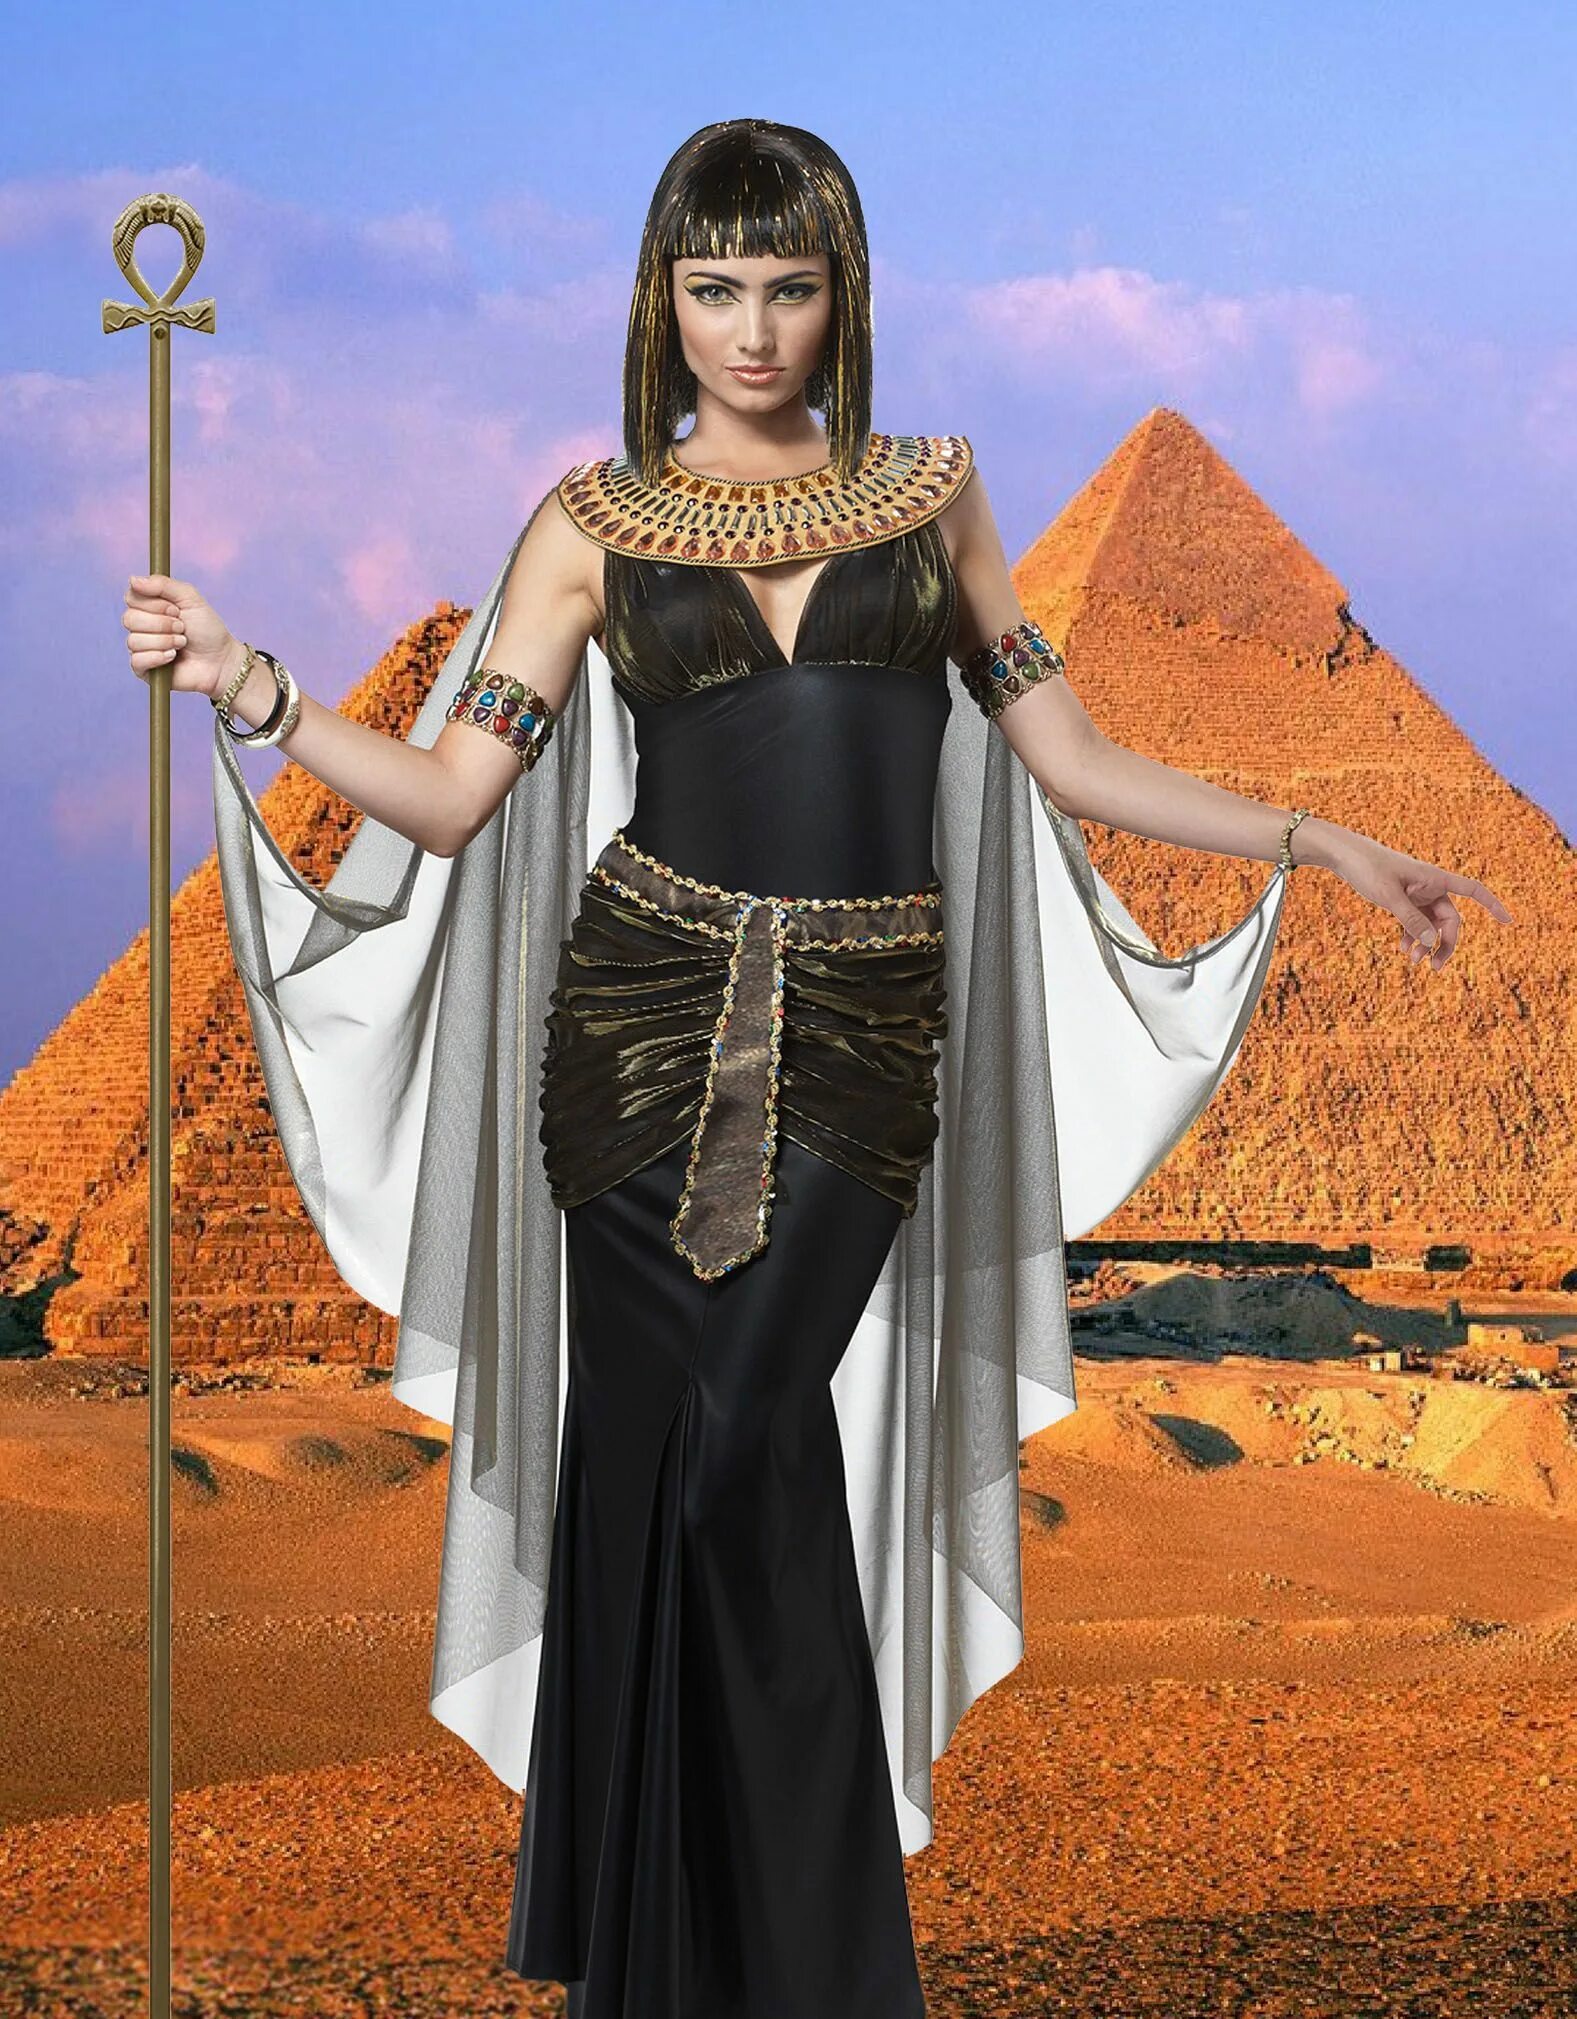 Клеопатра царица Египта. Клеопатра царица Египта наряд. Египетская царица Клеопатра в полный рост. Царица Египта хаджиспут.